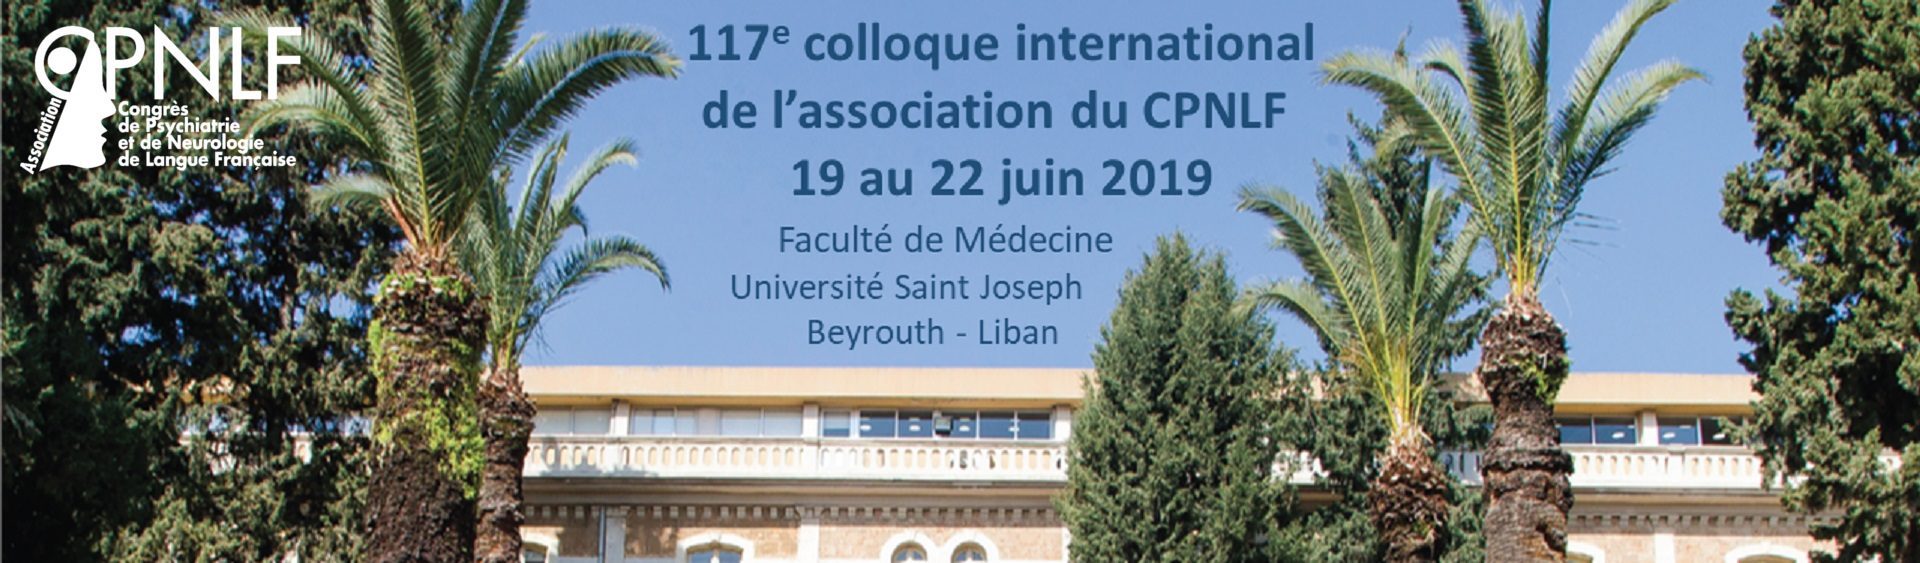 Le 117e colloque international de l’association du CPNLF 2019